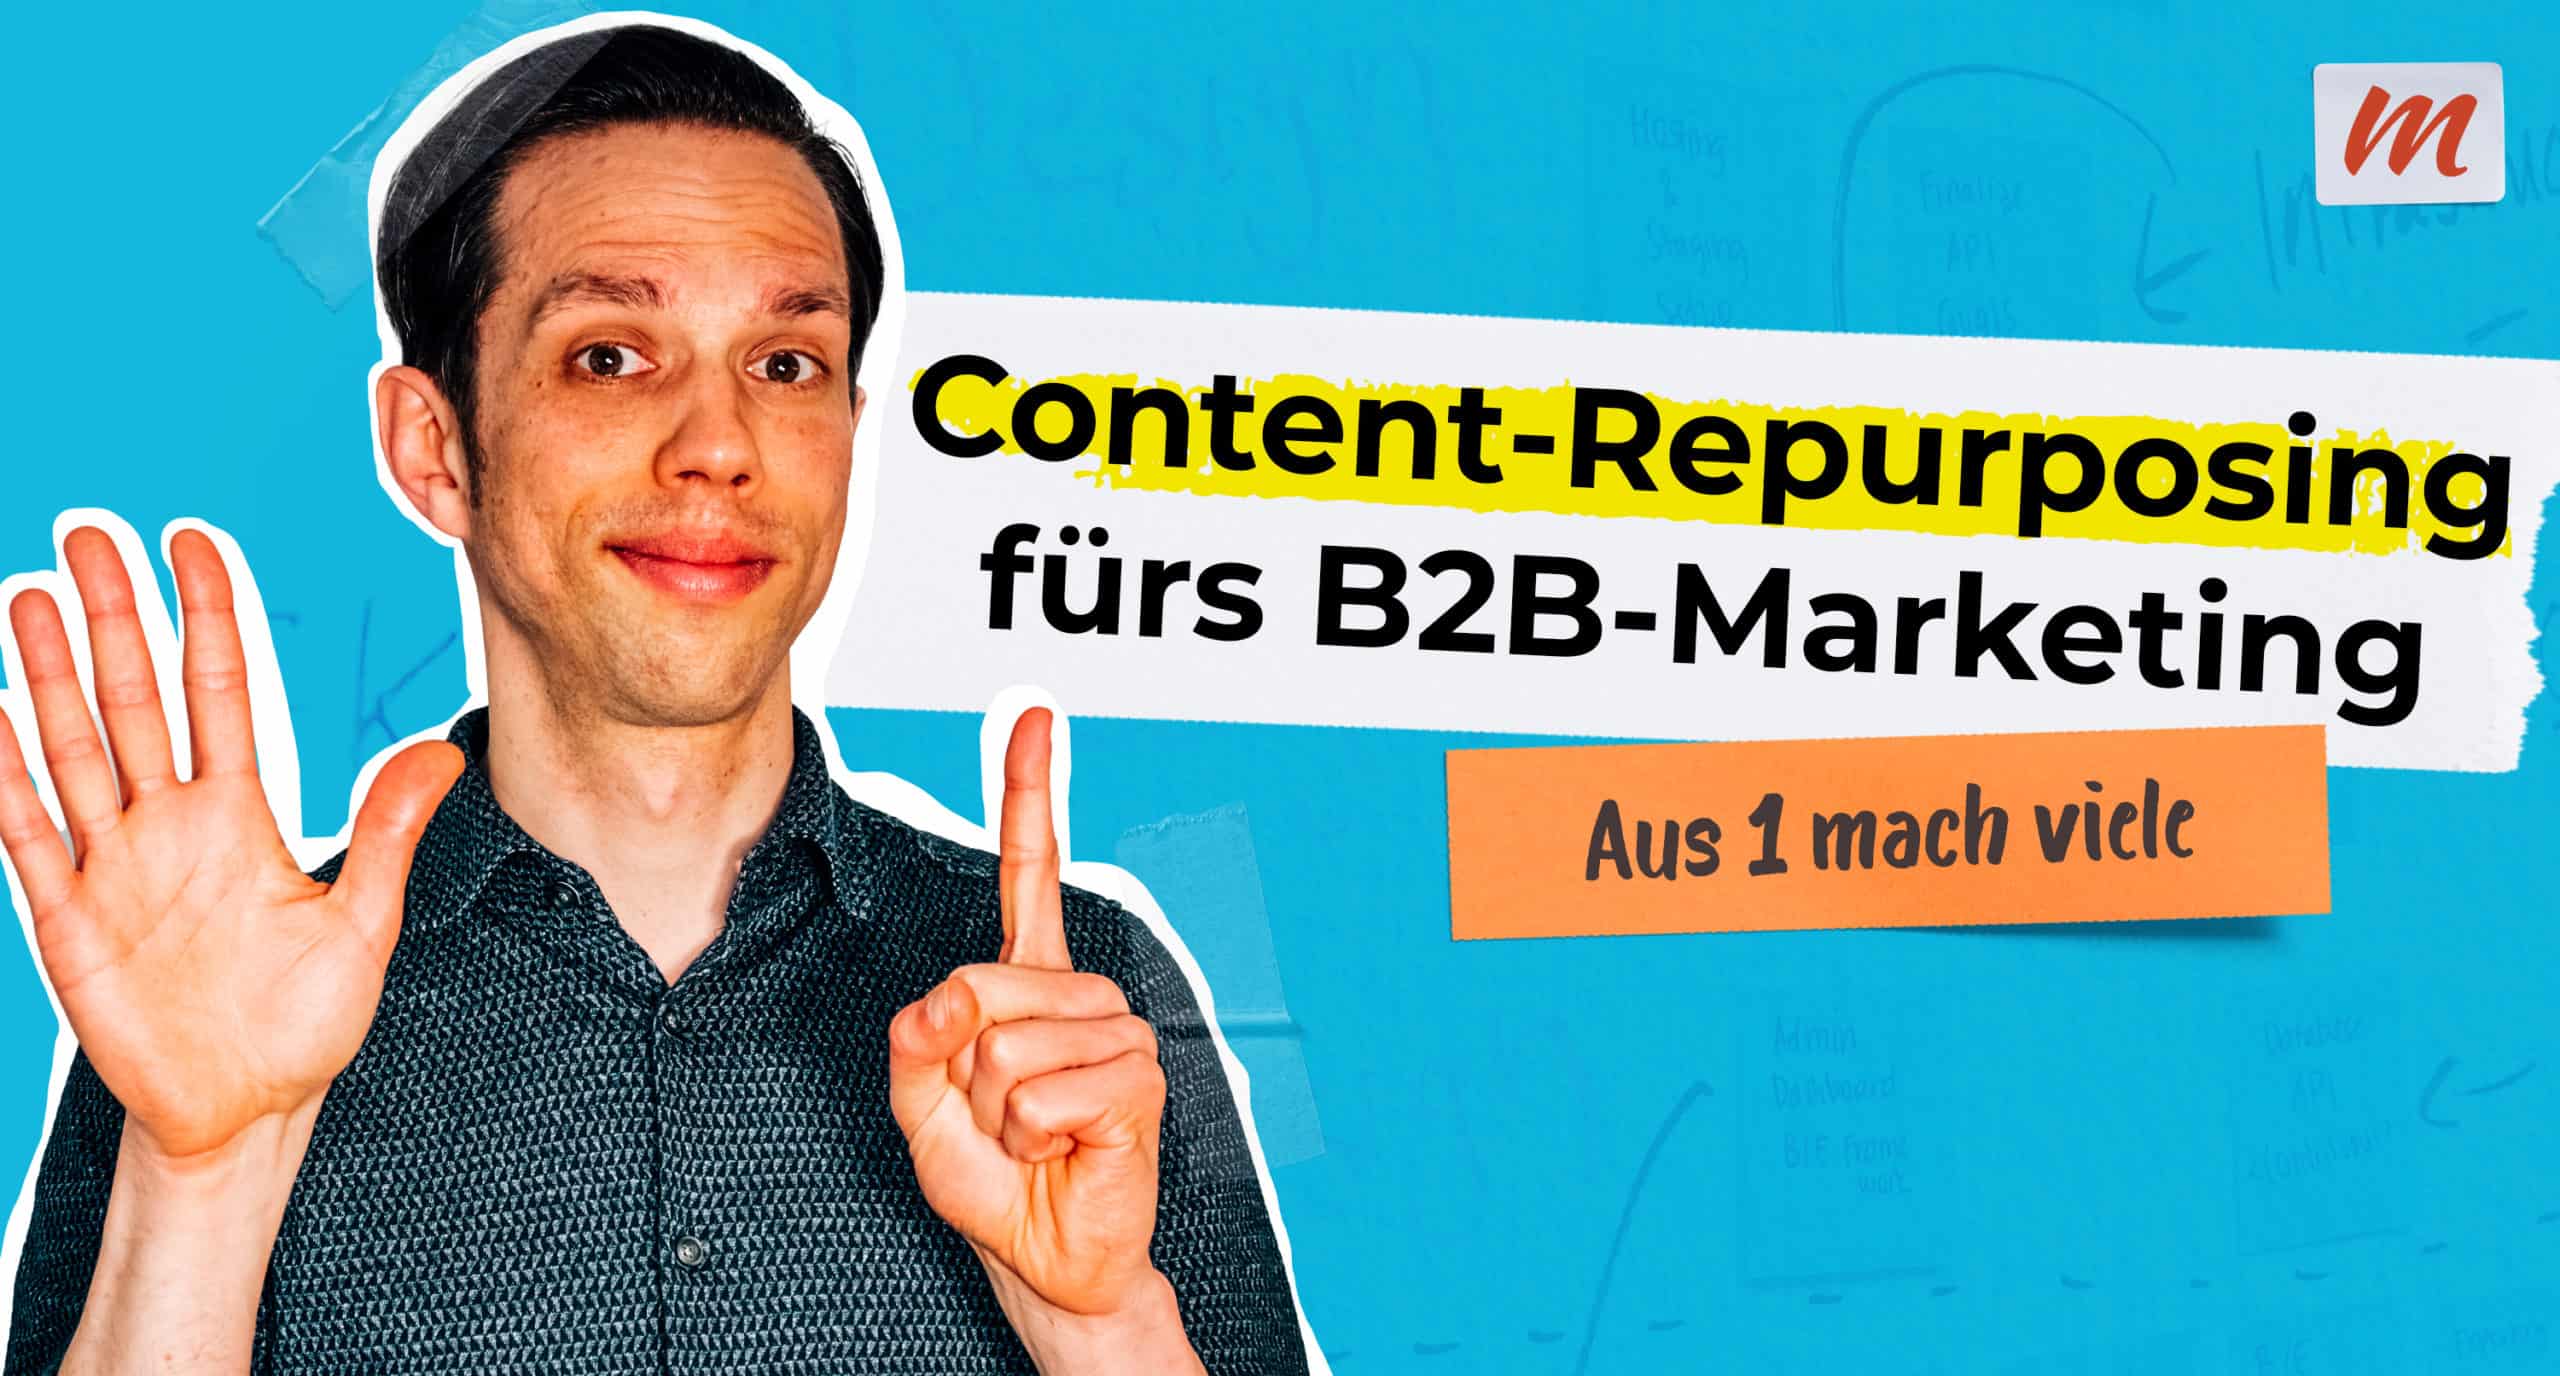 Content-Repurposing: die Anleitung fürs Marketing